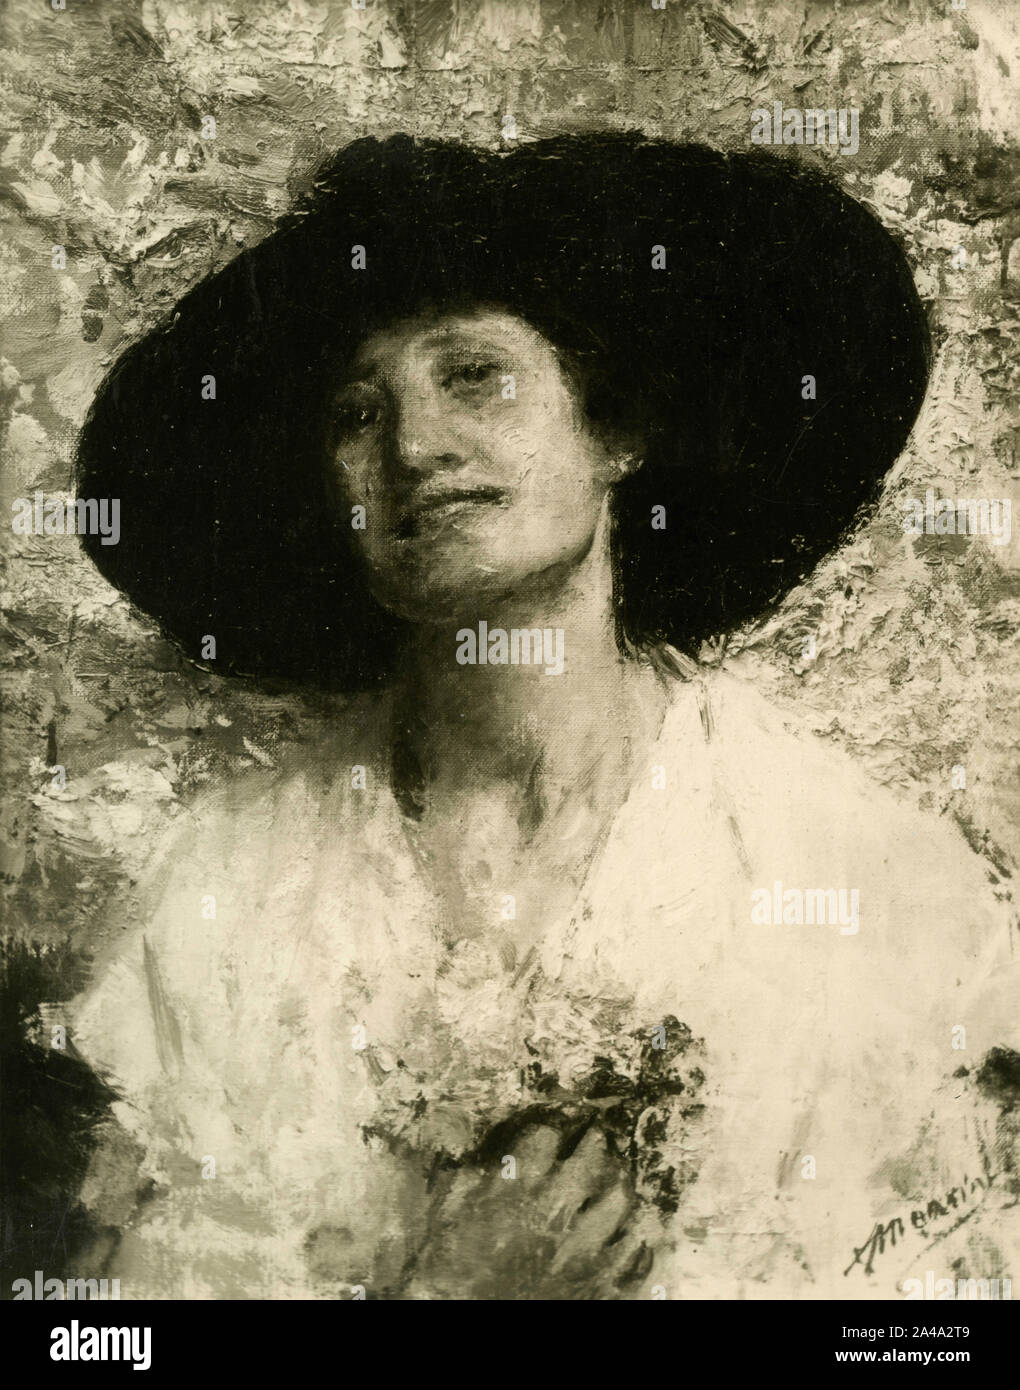 Enrica, mujer, retrato, pintura de pintor italiano Antonio Mancini, 1930 Foto de stock